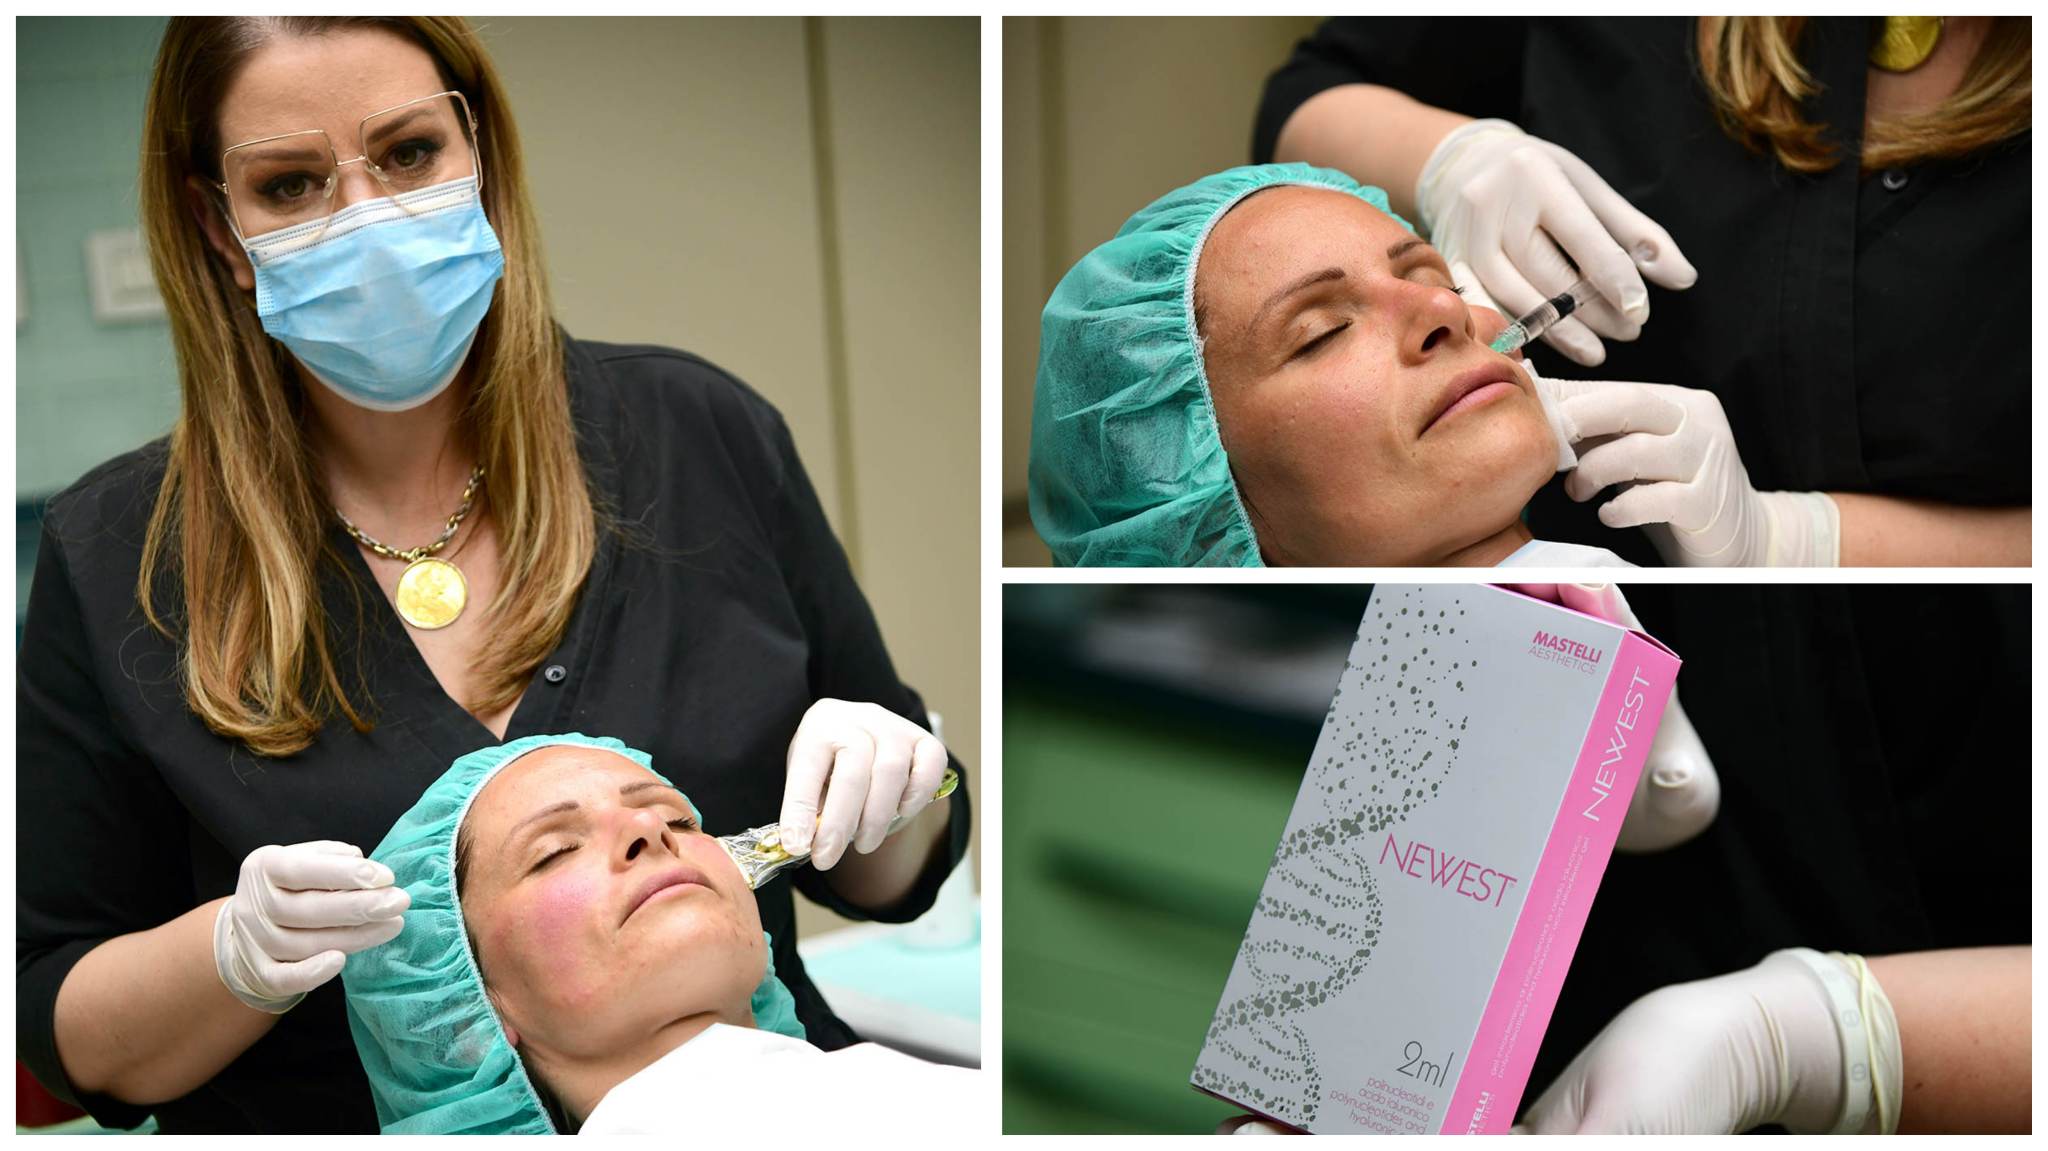 Dr. Viviana Kalmar nudi novi beauty tretman uz koji će vam koža zablistati najljepšim sjajem!